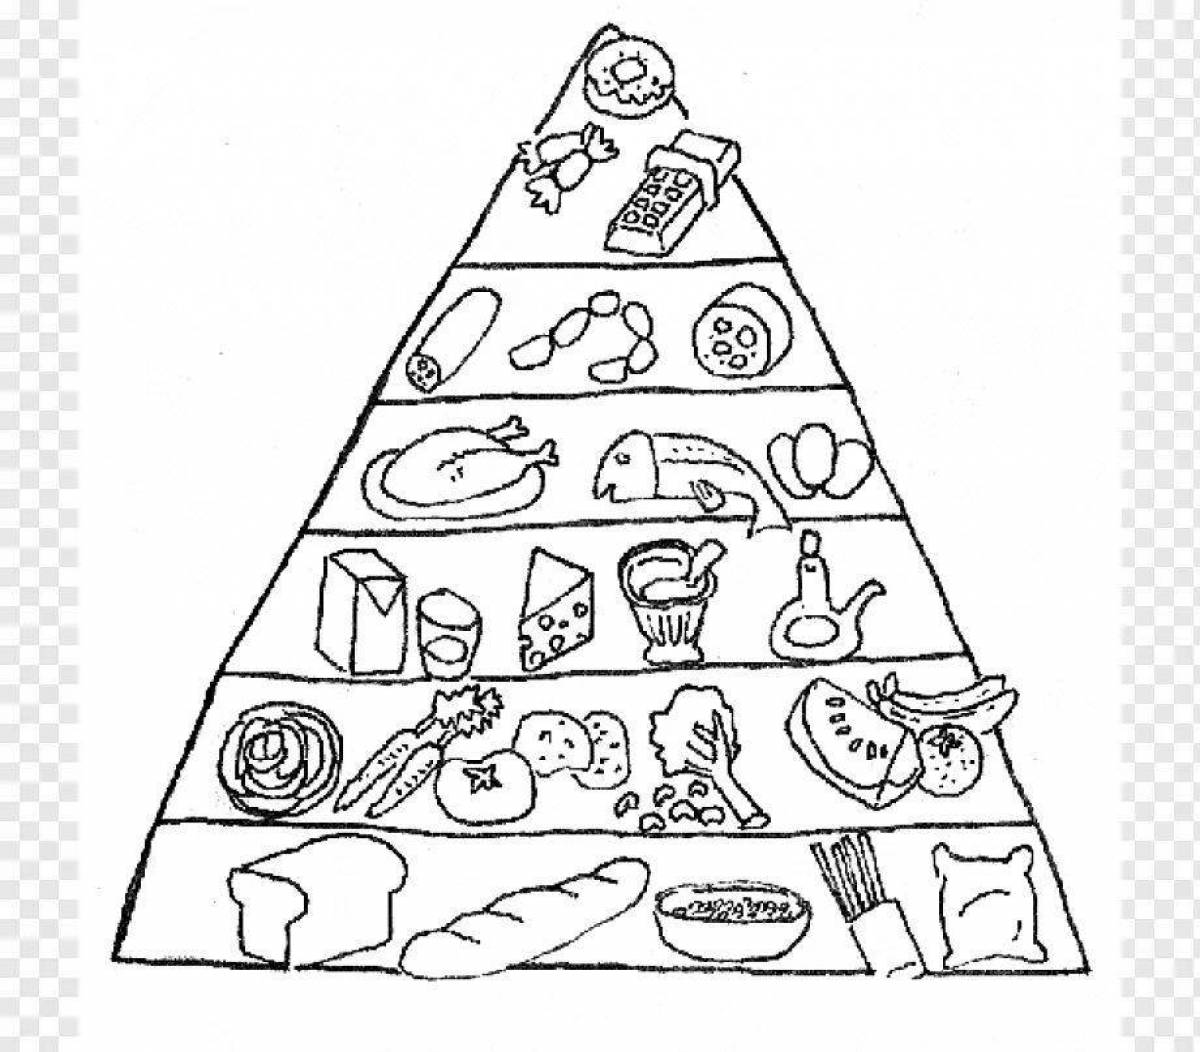 Пирамида здорового питания раскраска для детей